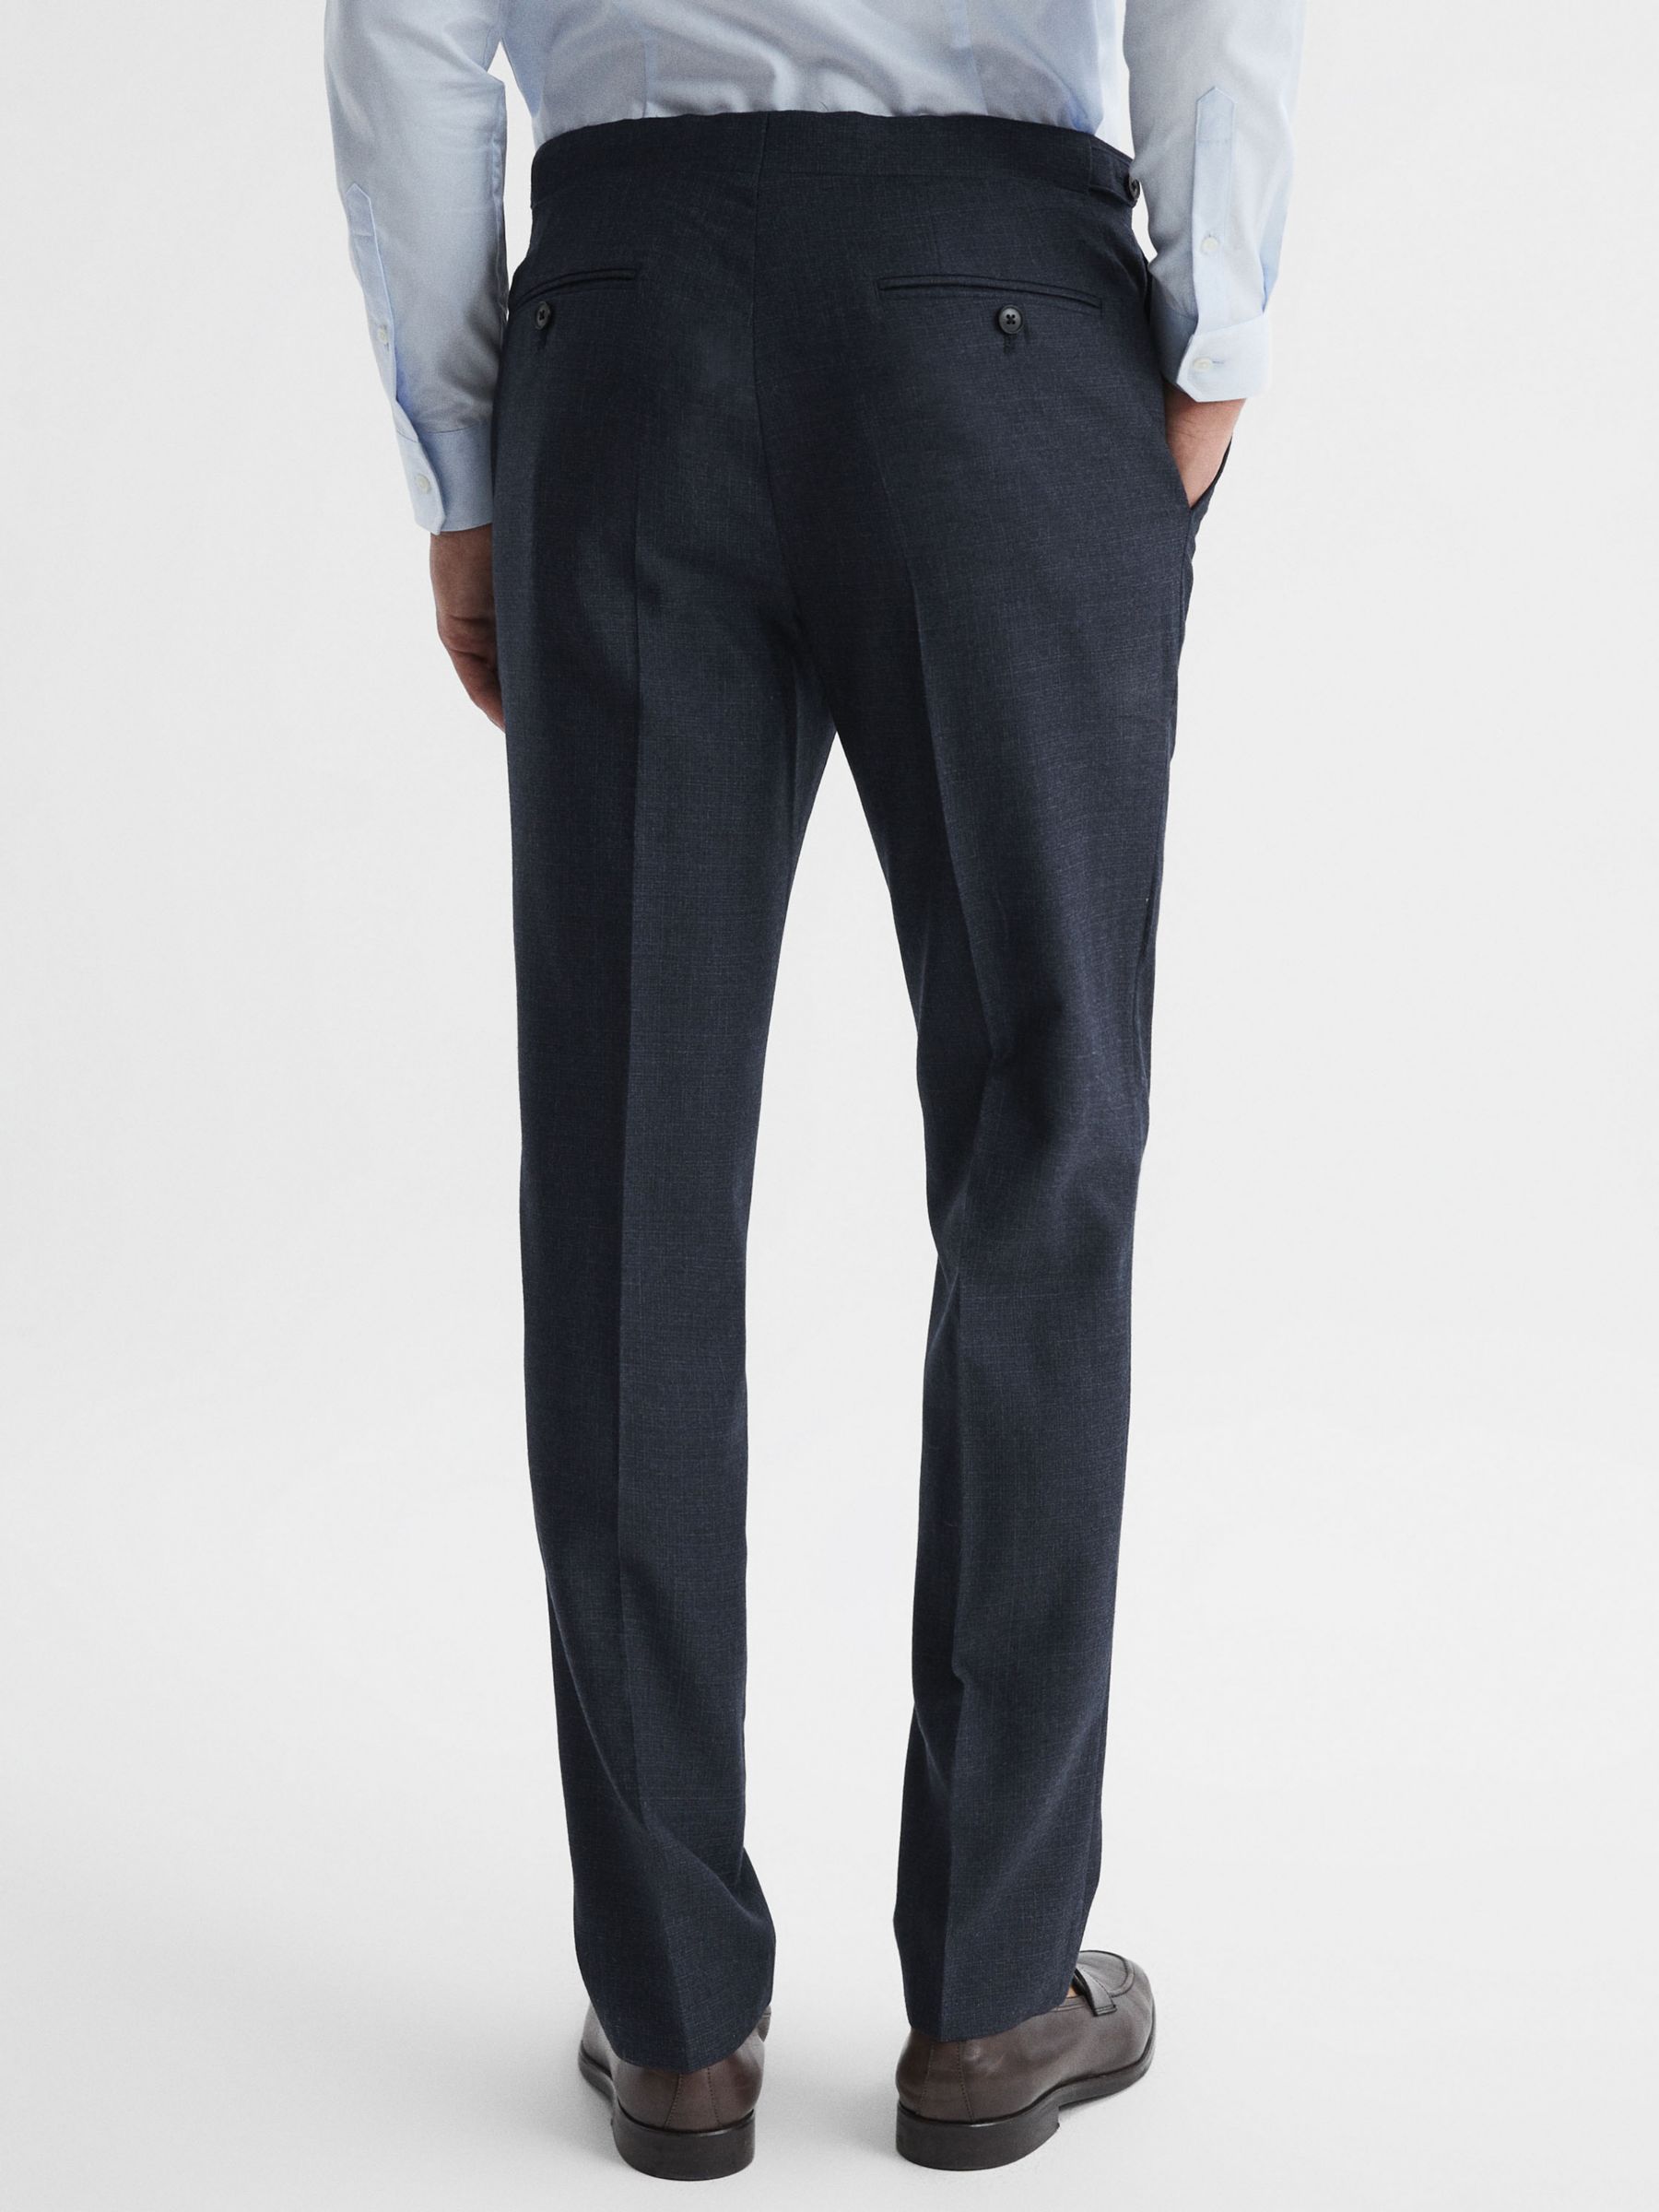 Reiss Dunn Cross Fleck Textured Trousers, Navy, Navy, 28R